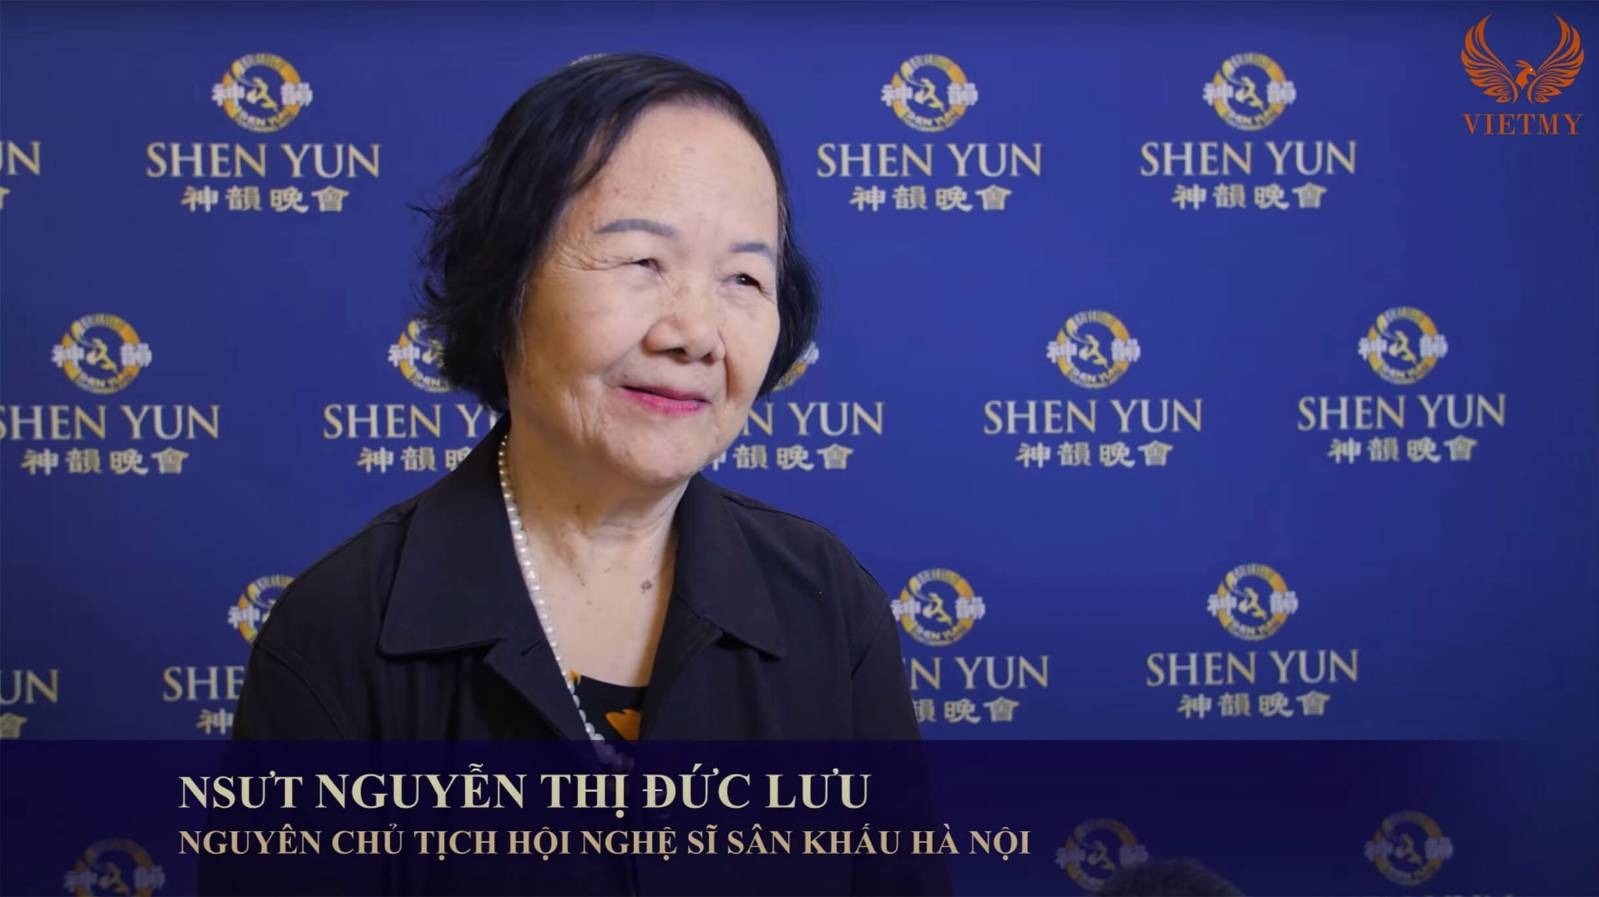 Vì sao Shen Yun lại gần gũi với văn hóa của người Việt Nam?